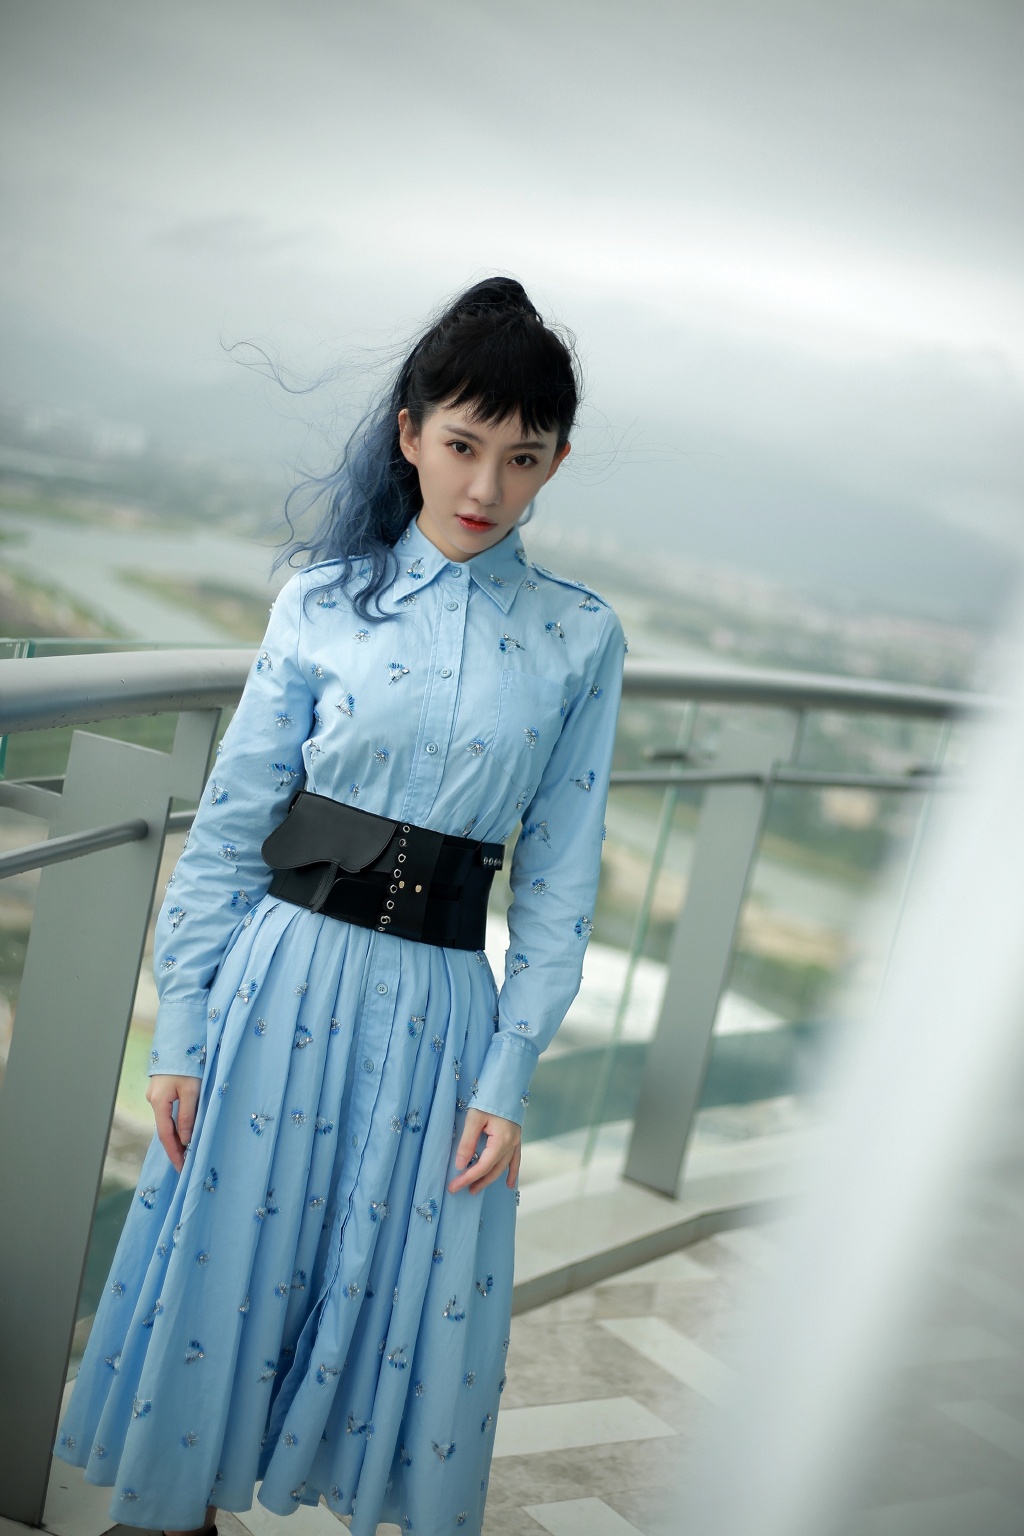 刘萌萌齐刘海长发搭配蓝色带水晶连衣裙气质写真照第1张